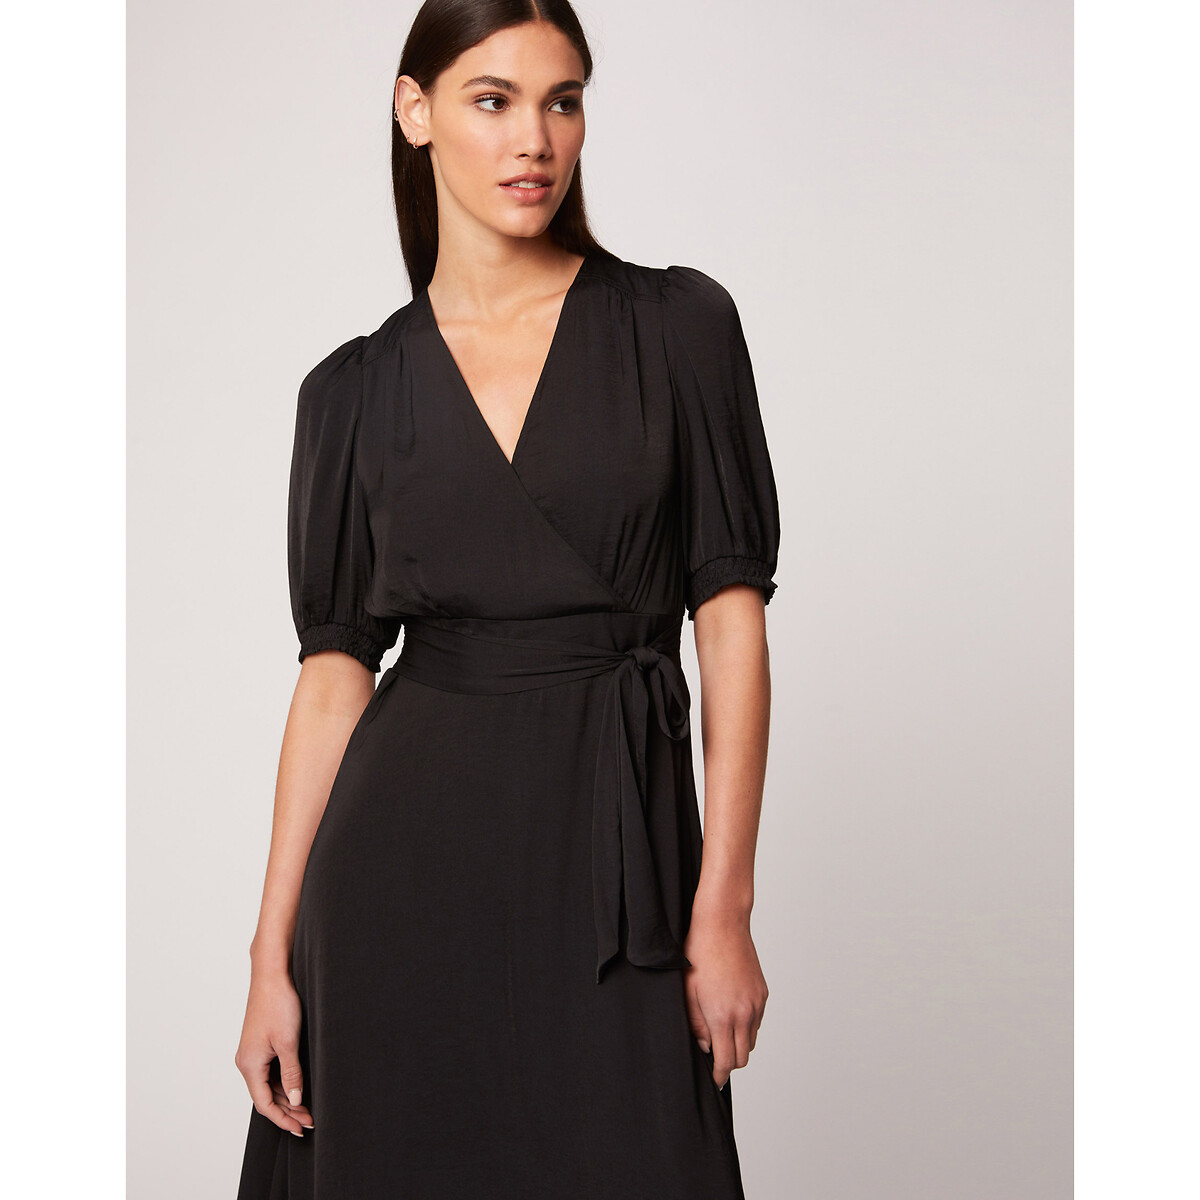 Платье LaRedoute Длинное с короткими рукавами V-образный врыез 44 черный, размер 44 - фото 1